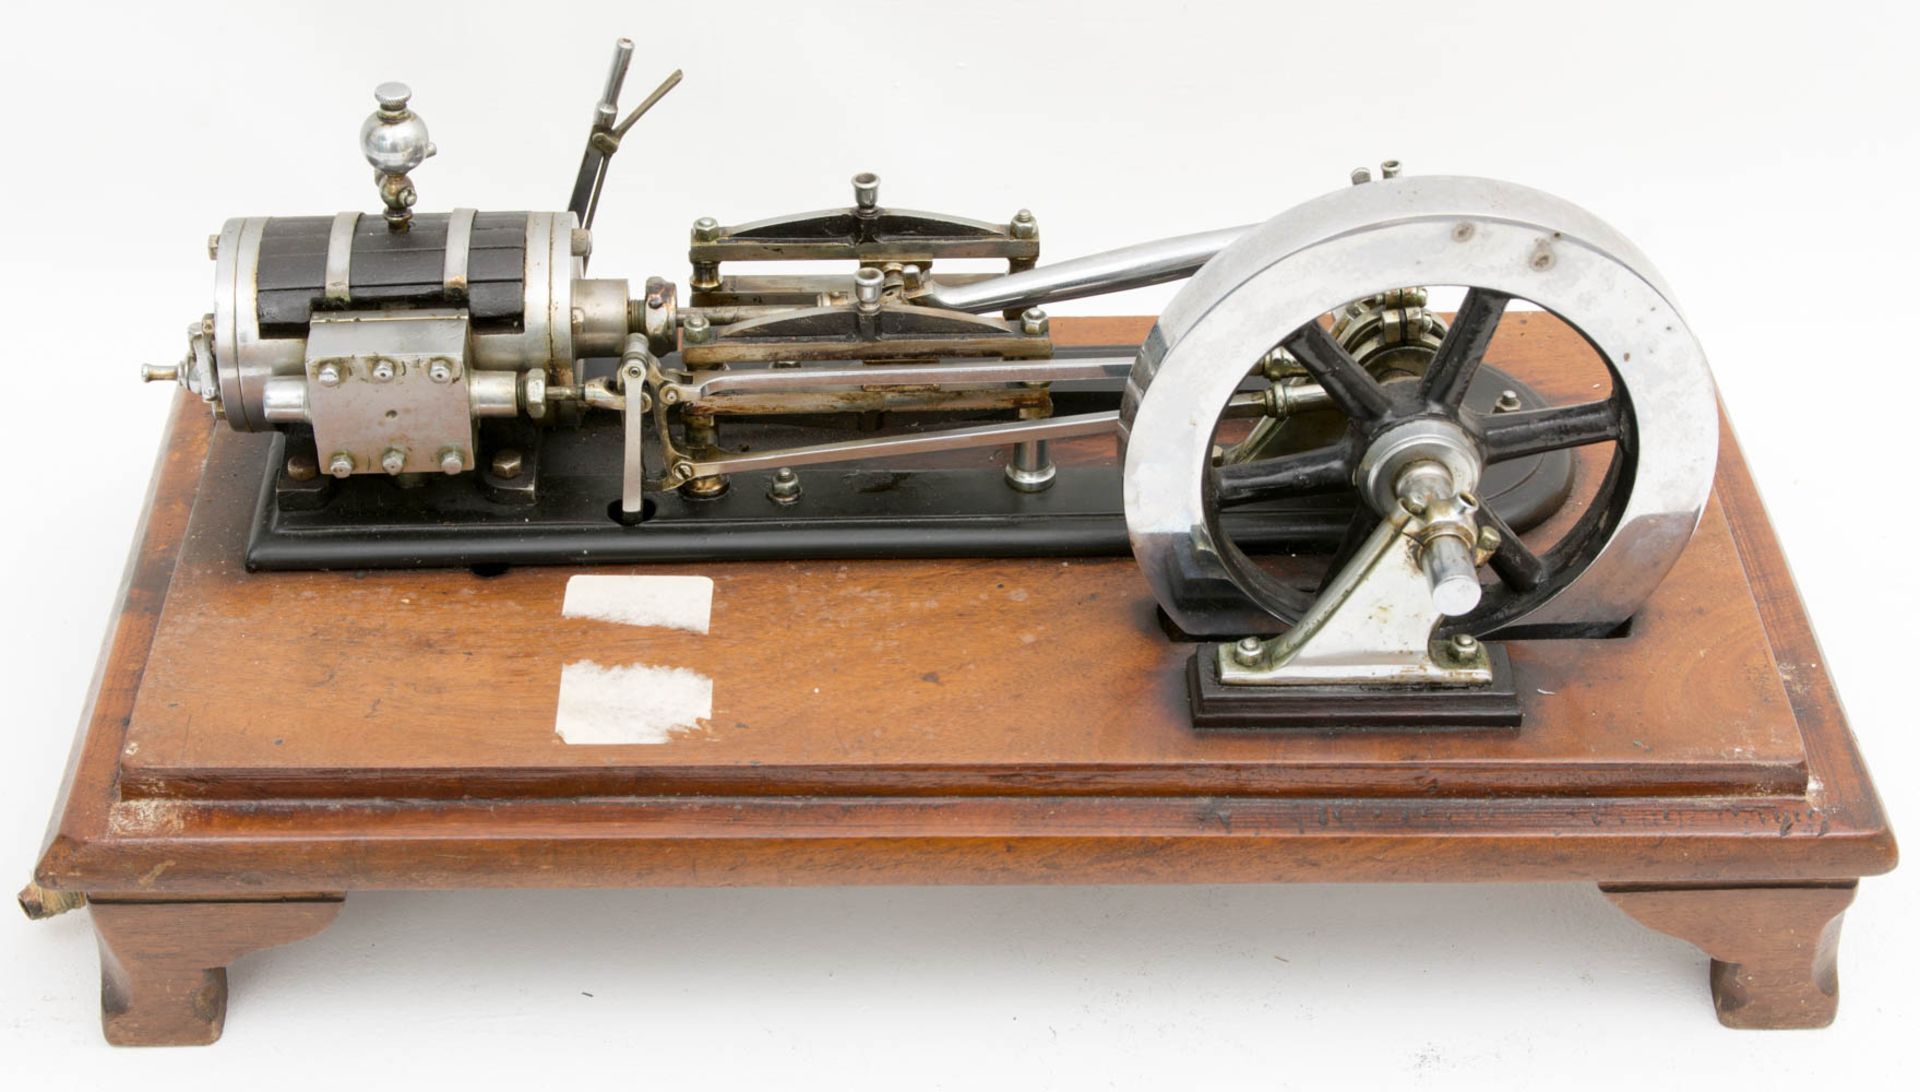 Modell Dampfmaschine in Holzkasten mit Glasscheiben.Kleine Modell-Dampfmaschine in Hol - Bild 2 aus 7